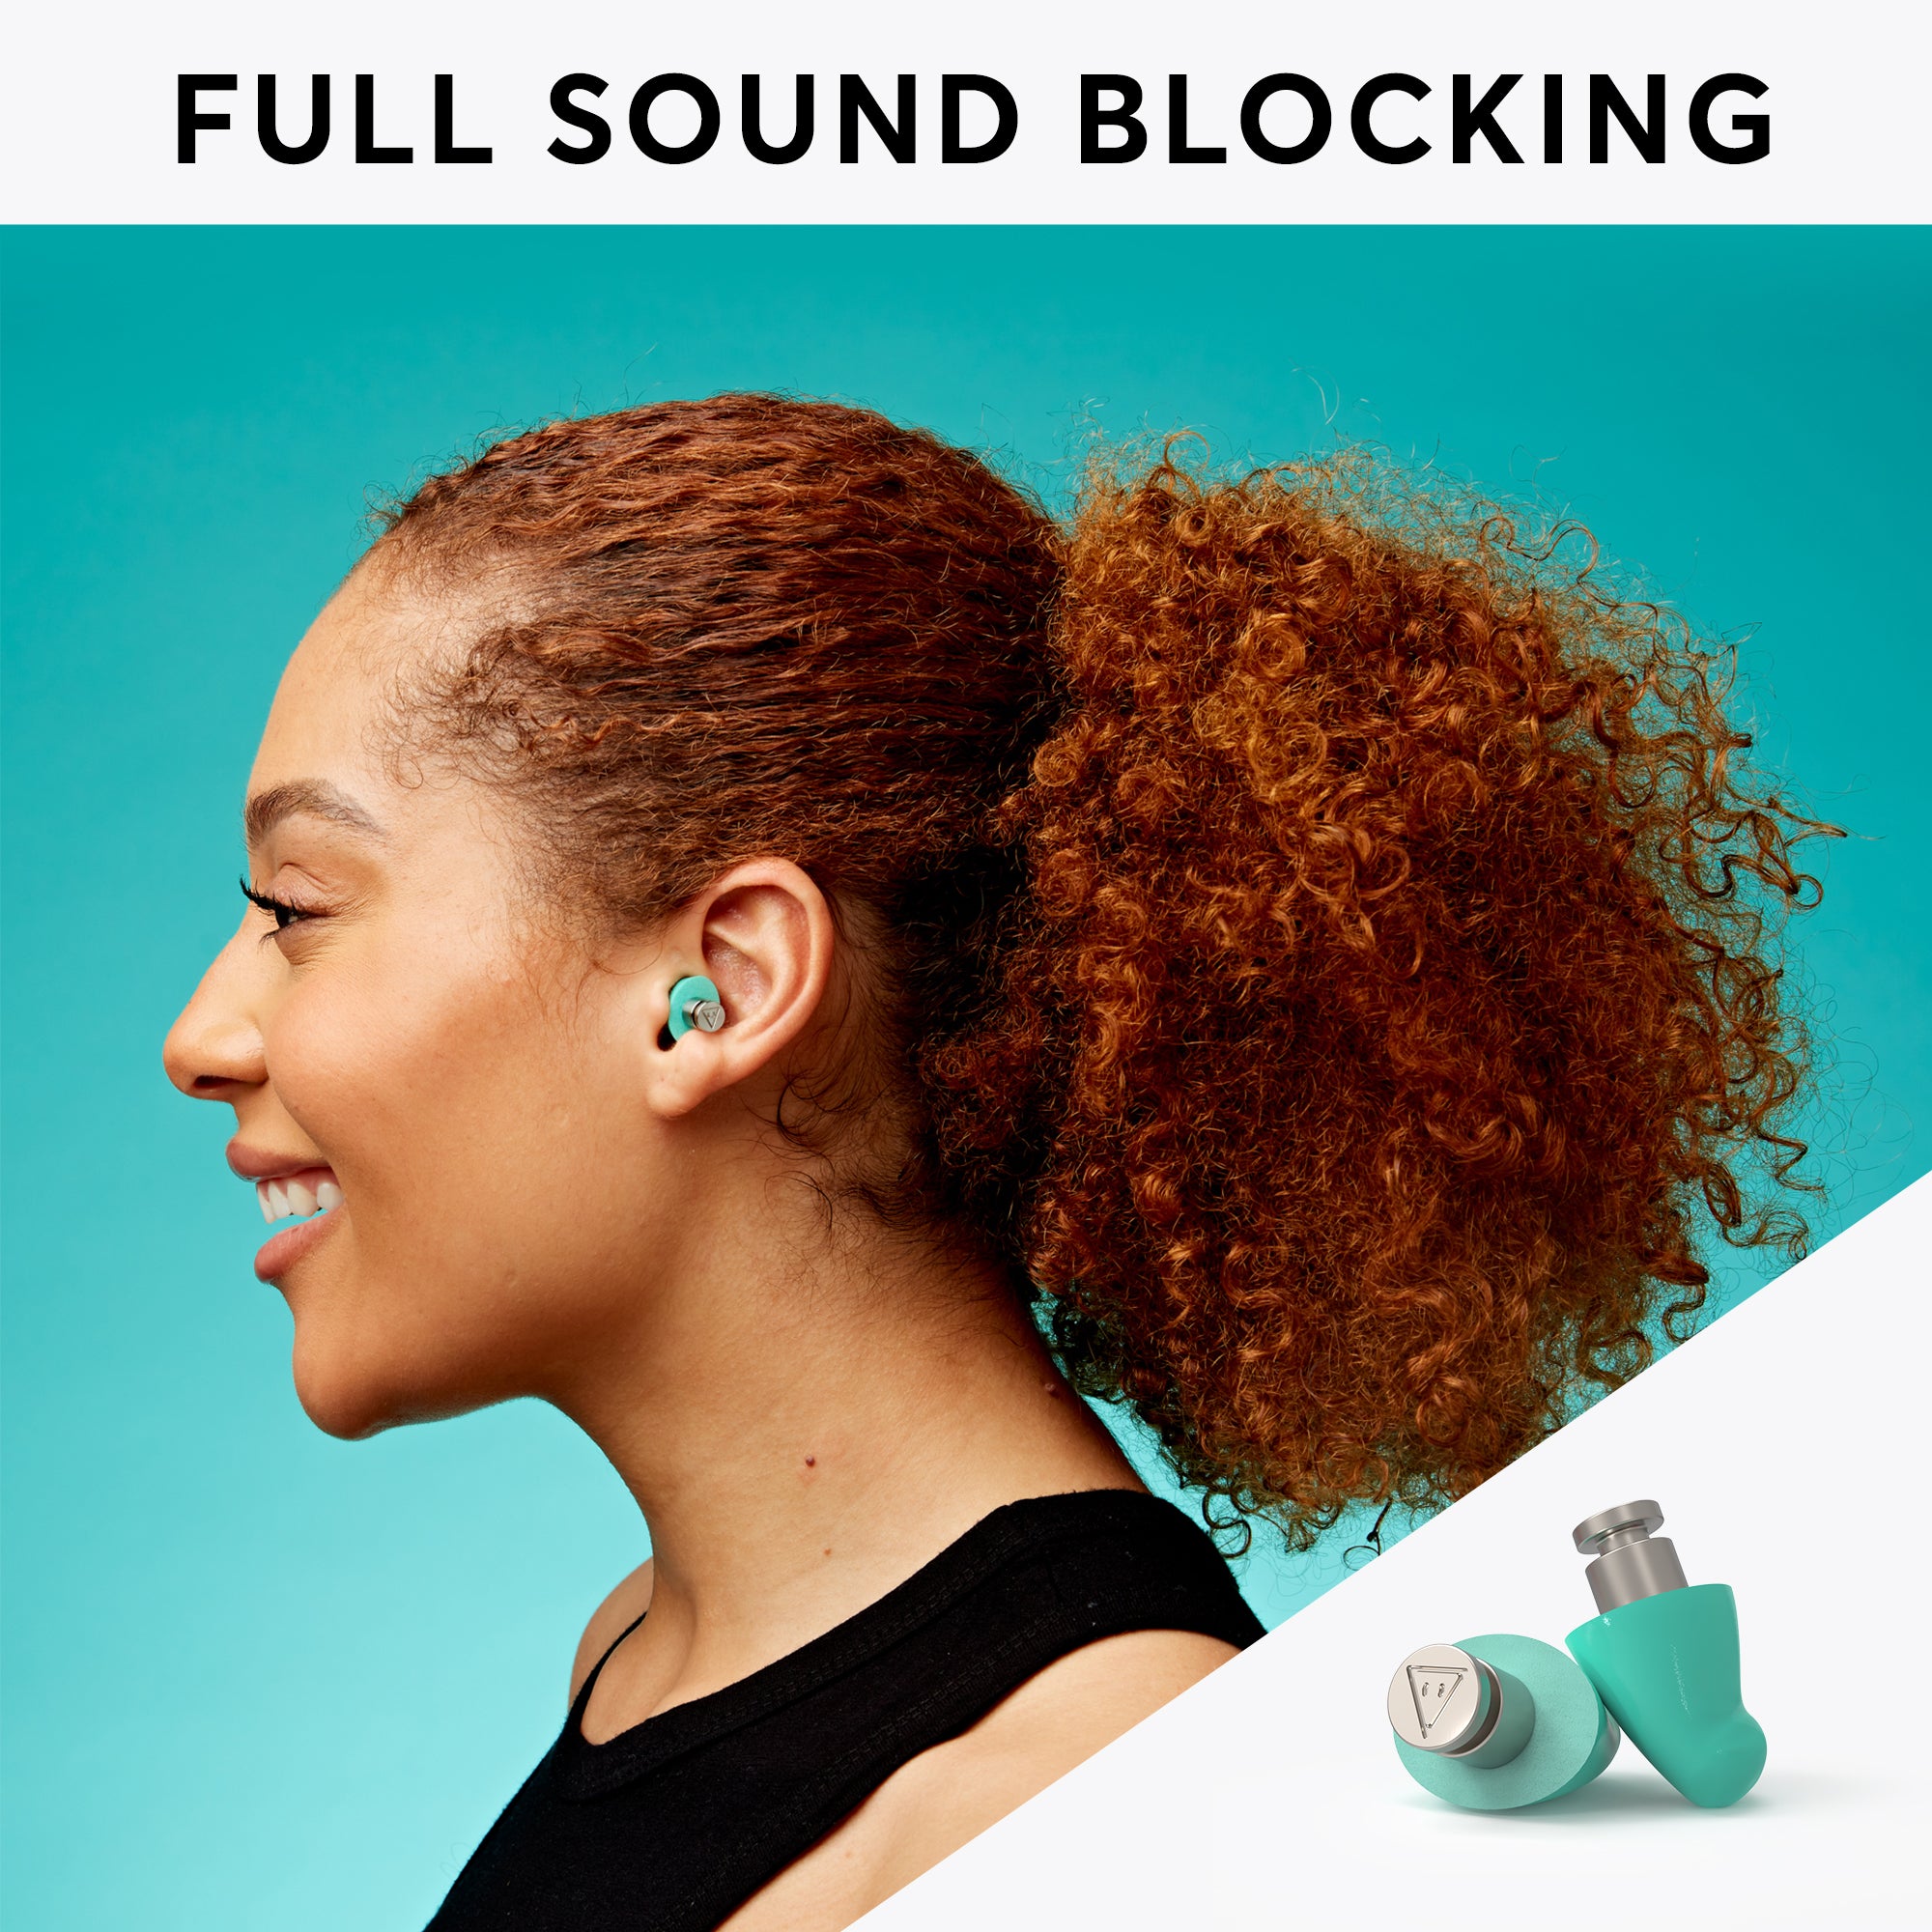 Flare Audio Calmer soft Purple - bouchon d'oreille qui réduit le stress et  augmente la